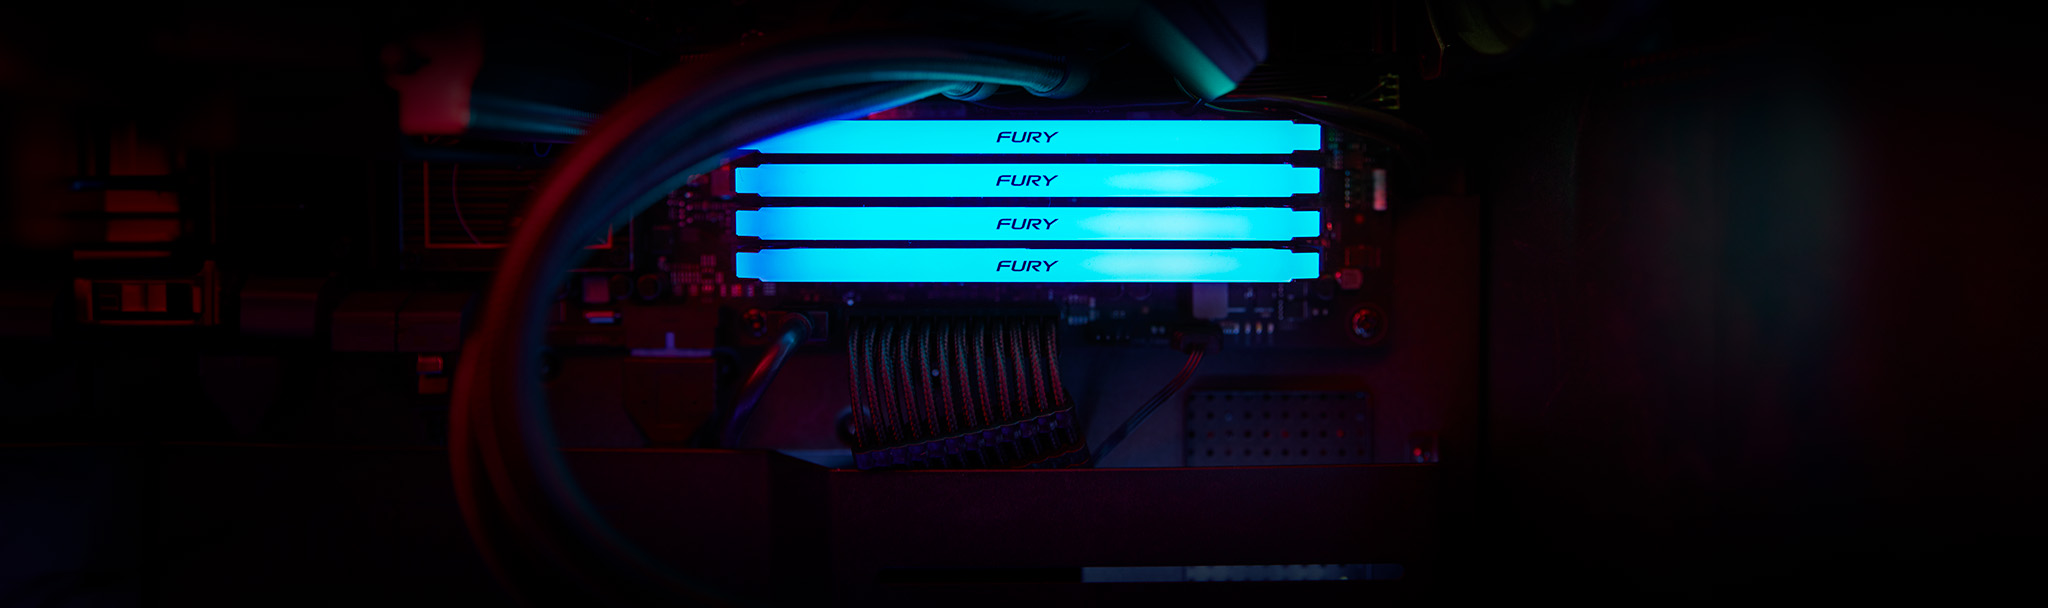 DDR4 RGB สีแถวเรืองแสงสีฟ้าในเคส PC สีดำ